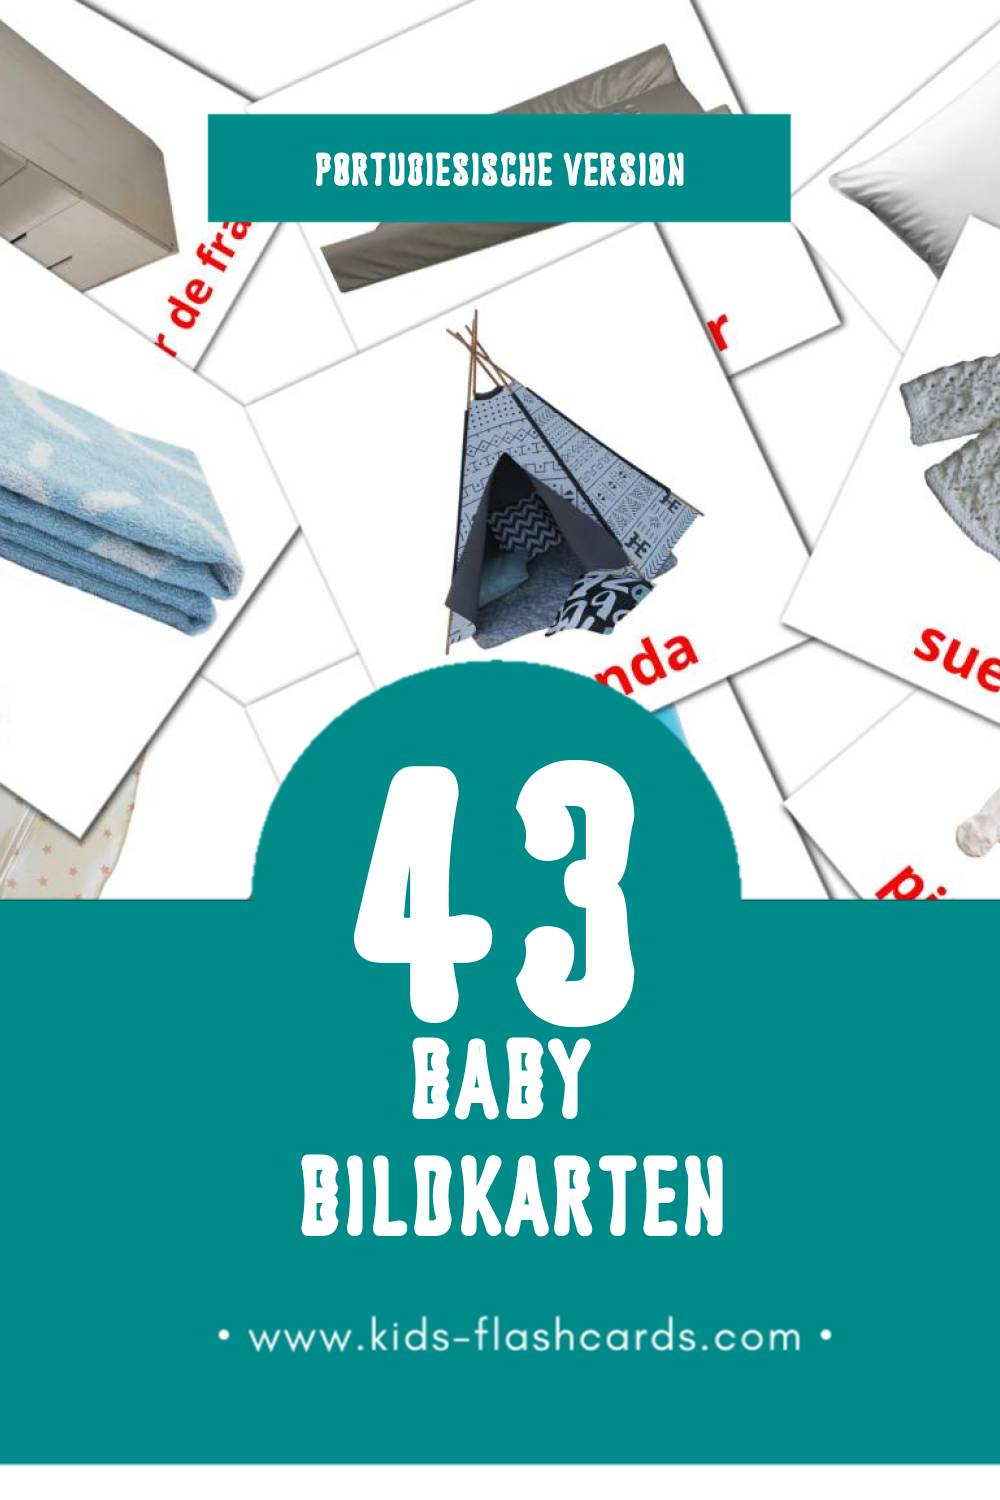 Visual Bebê Flashcards für Kleinkinder (43 Karten in Portugiesisch)